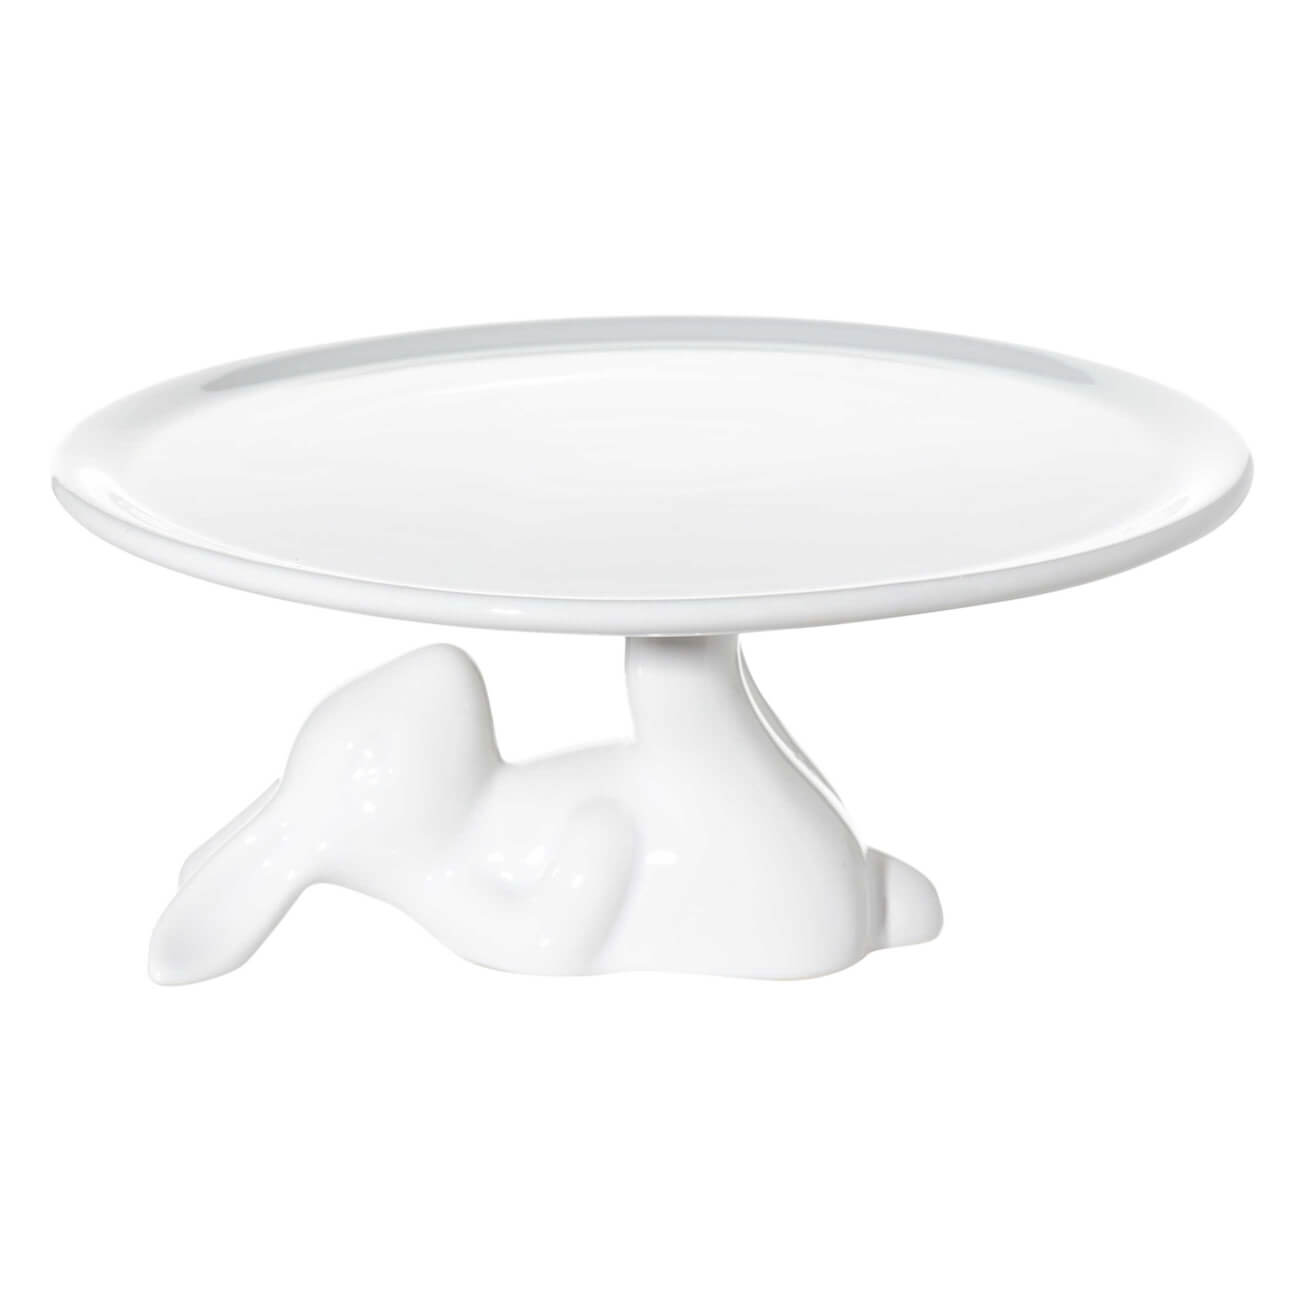 Блюдо на ножке, 22x9 см, керамика, белое, Кролик, Easter блюдо пасхальное 23 см 9 отд керамика белое кролик в ах easter